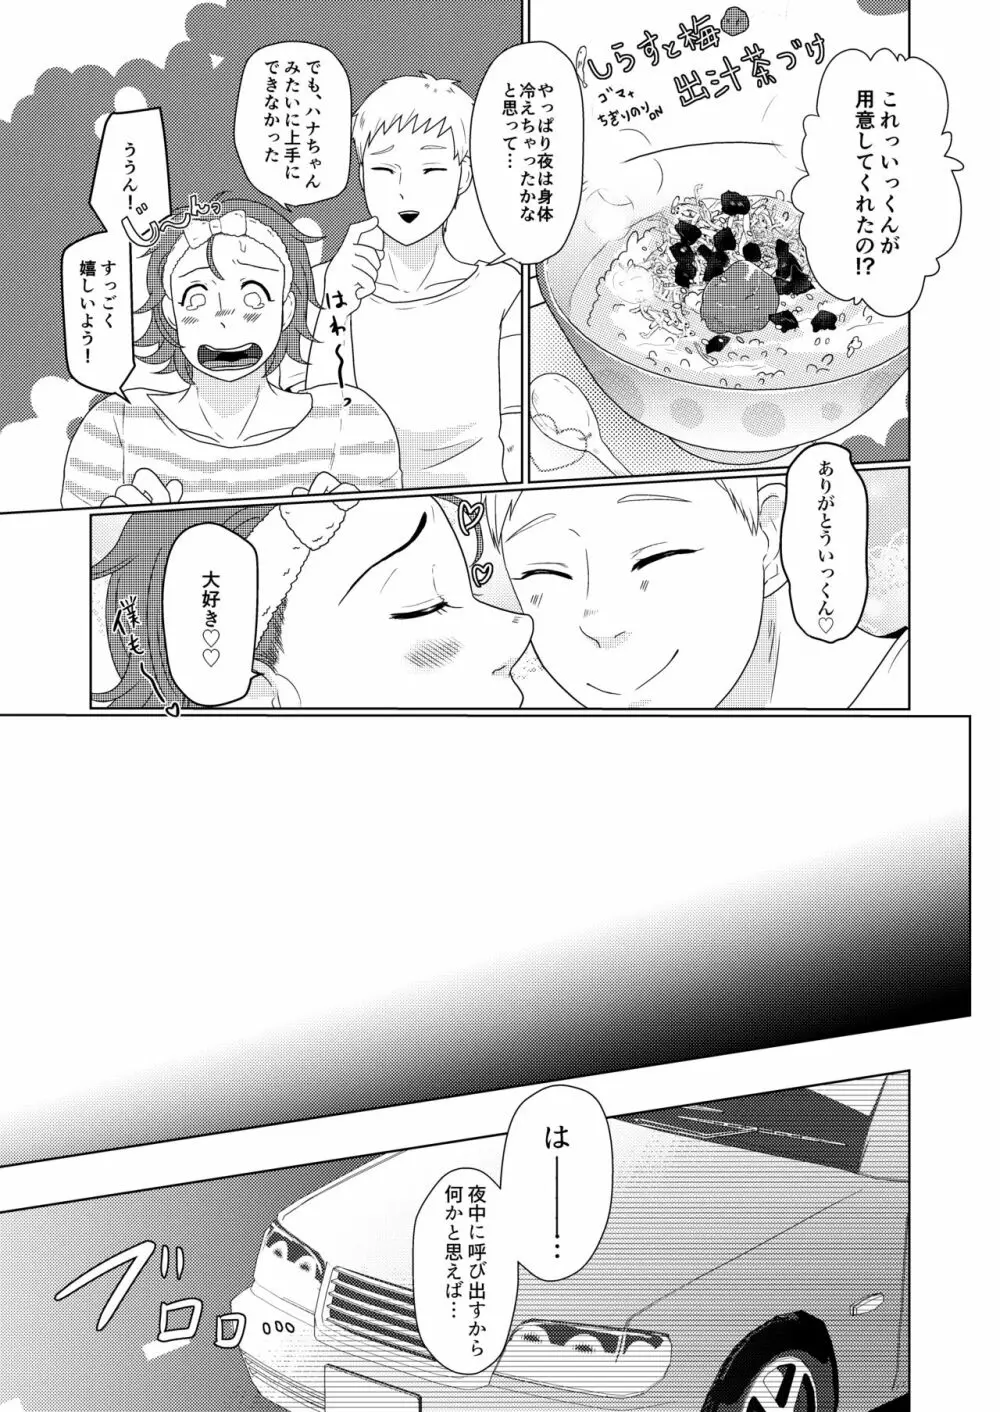 SM調教漫画③夜のお散歩編 16ページ